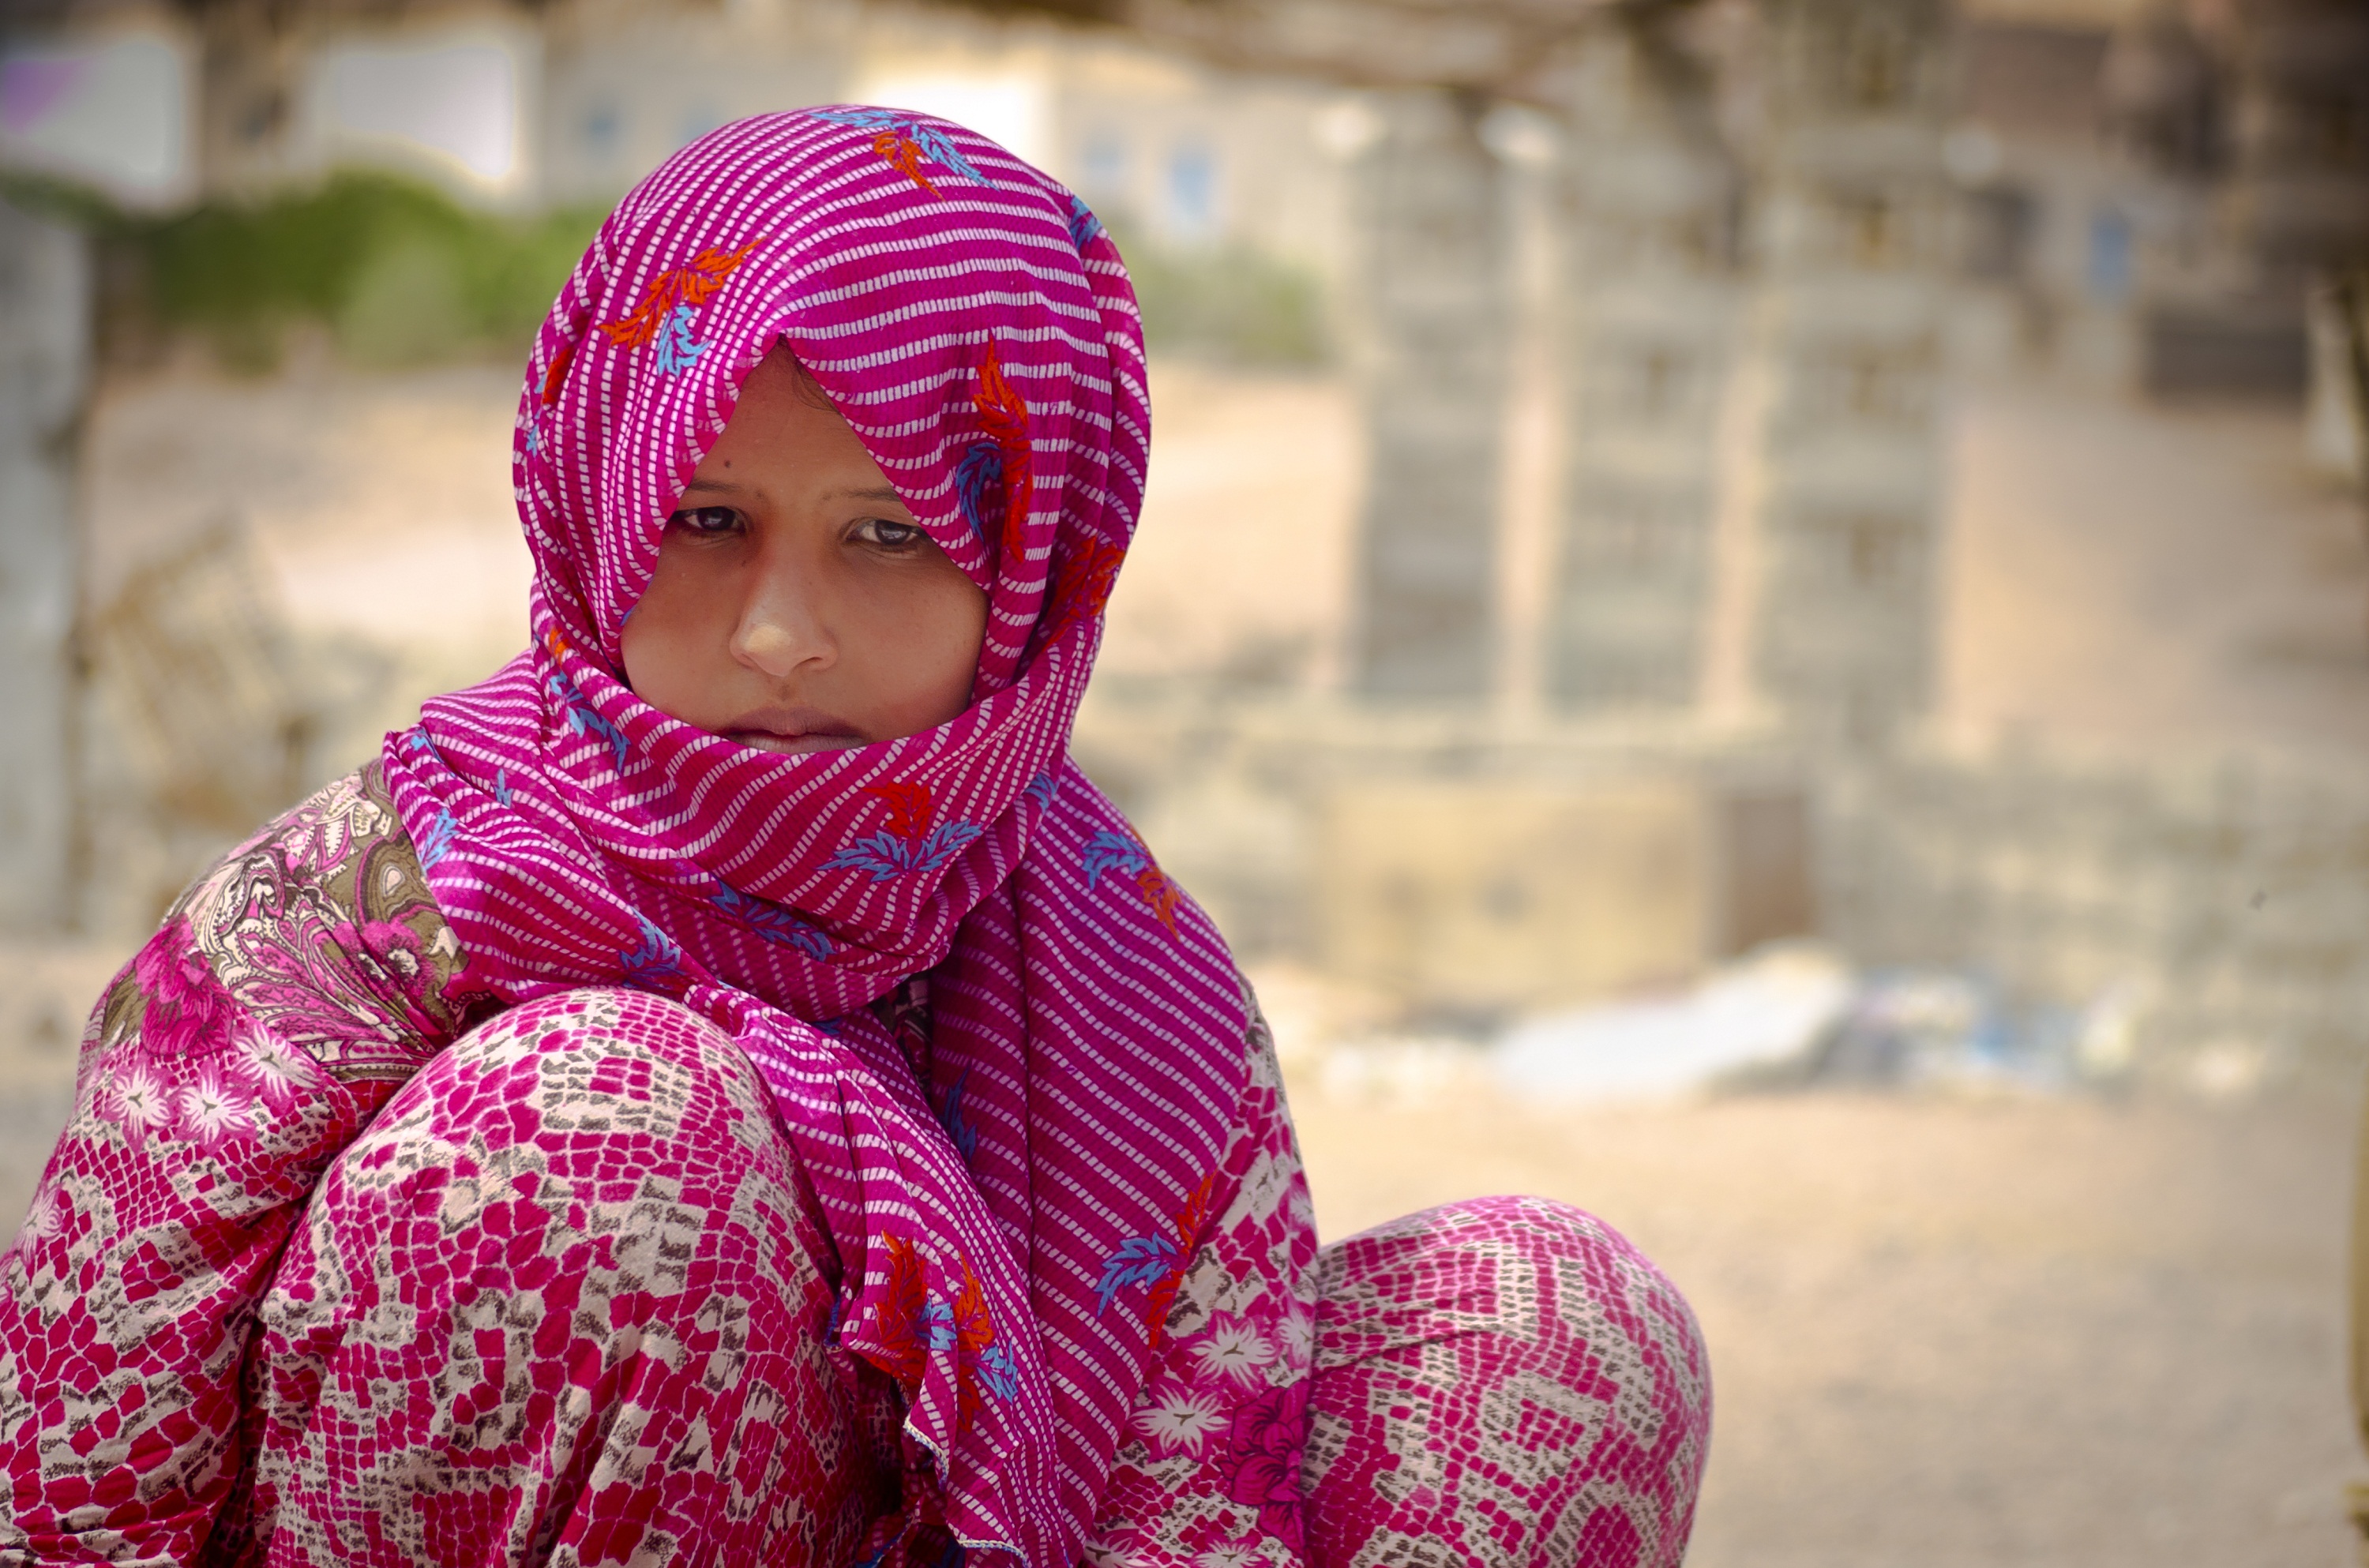 A Bedouin girl in Nuweiba - Egypt